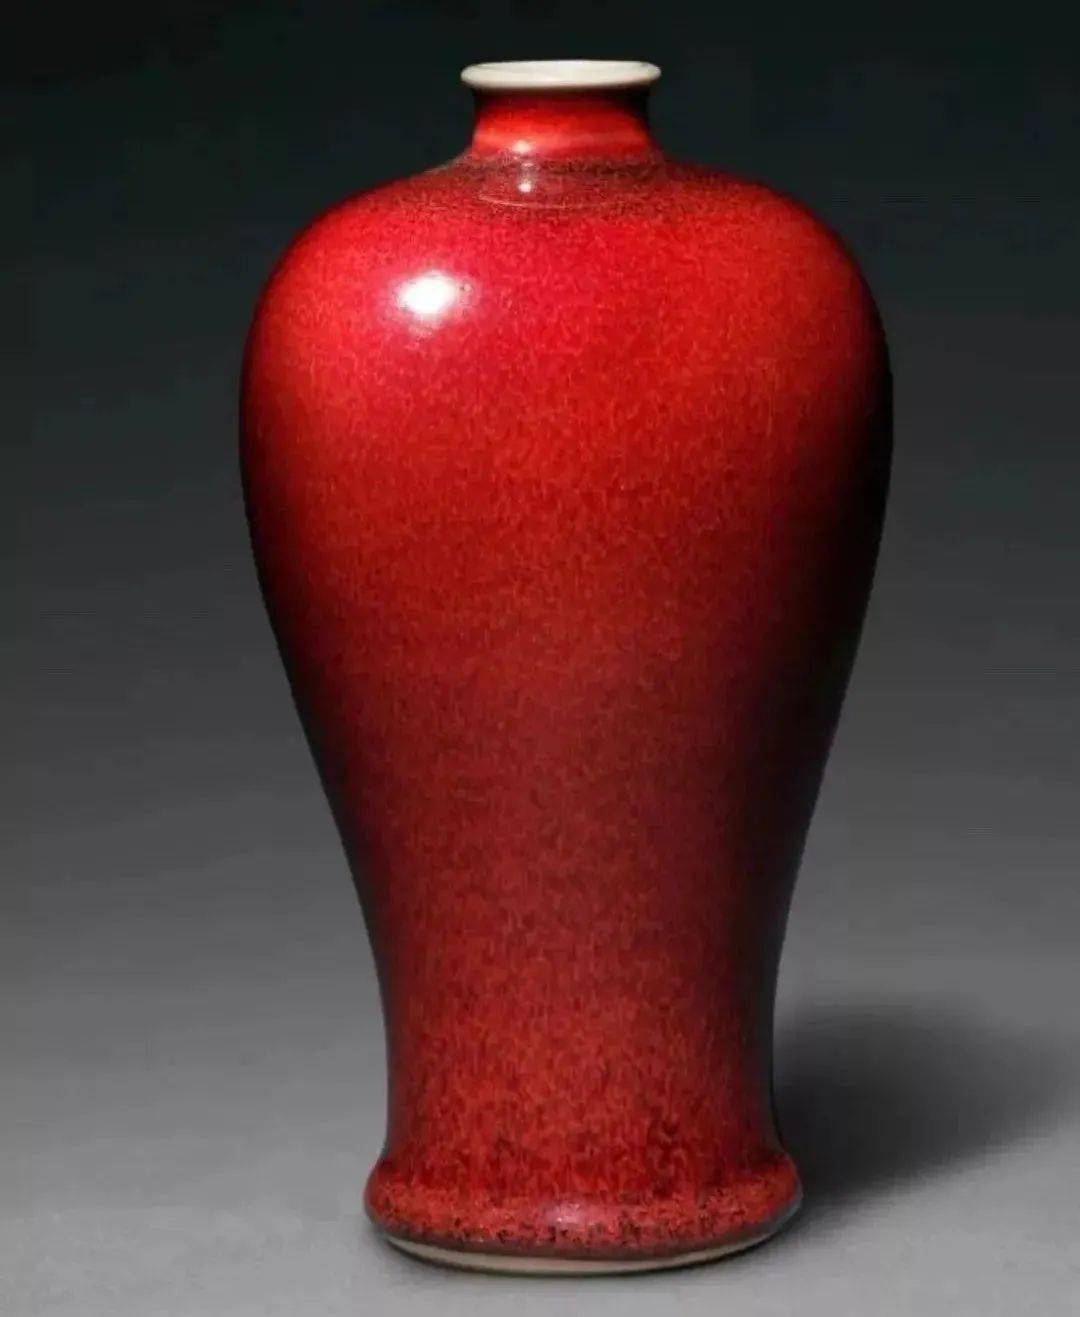 郎窑红,被称为最美的中国红,见识下故宫博物馆藏的清康熙郎红